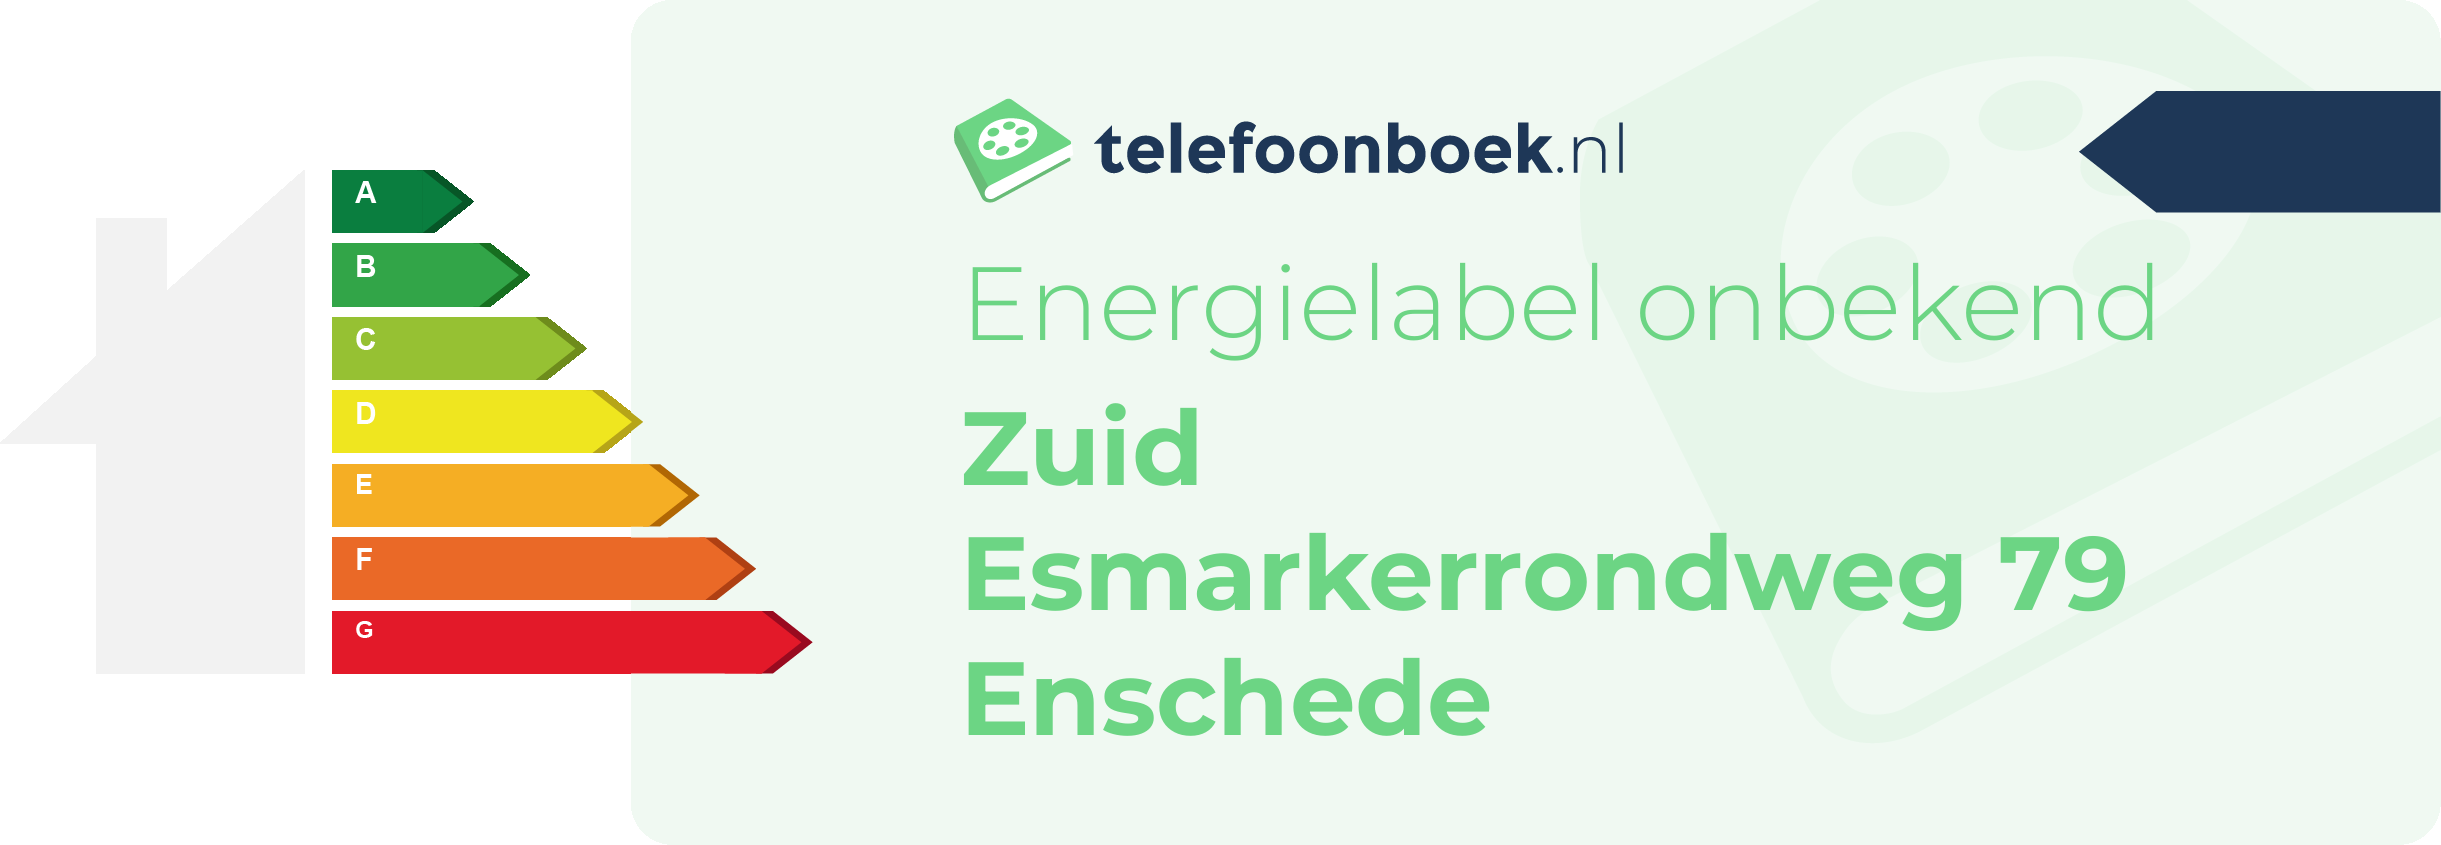 Energielabel Zuid Esmarkerrondweg 79 Enschede